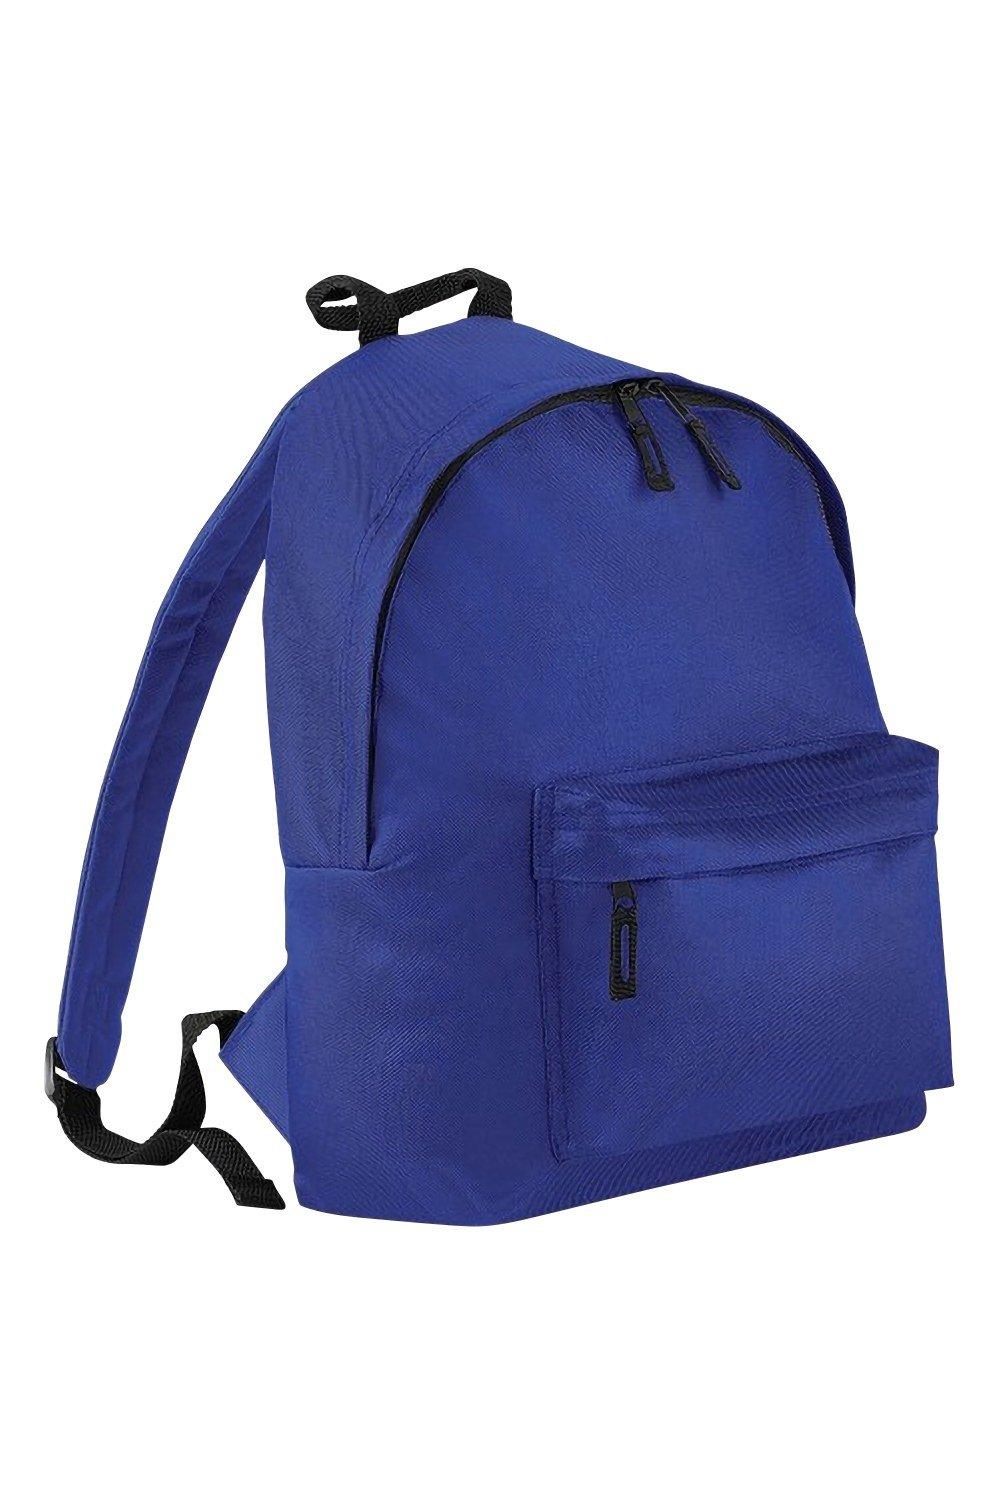 Модный рюкзак / рюкзак (14 литров) (2 шт. в упаковке) Bagbase, синий trixie купалка для хомяков и мышей дерево 22 х 12 х 12 см 63004 0 325 кг 56348 1 шт